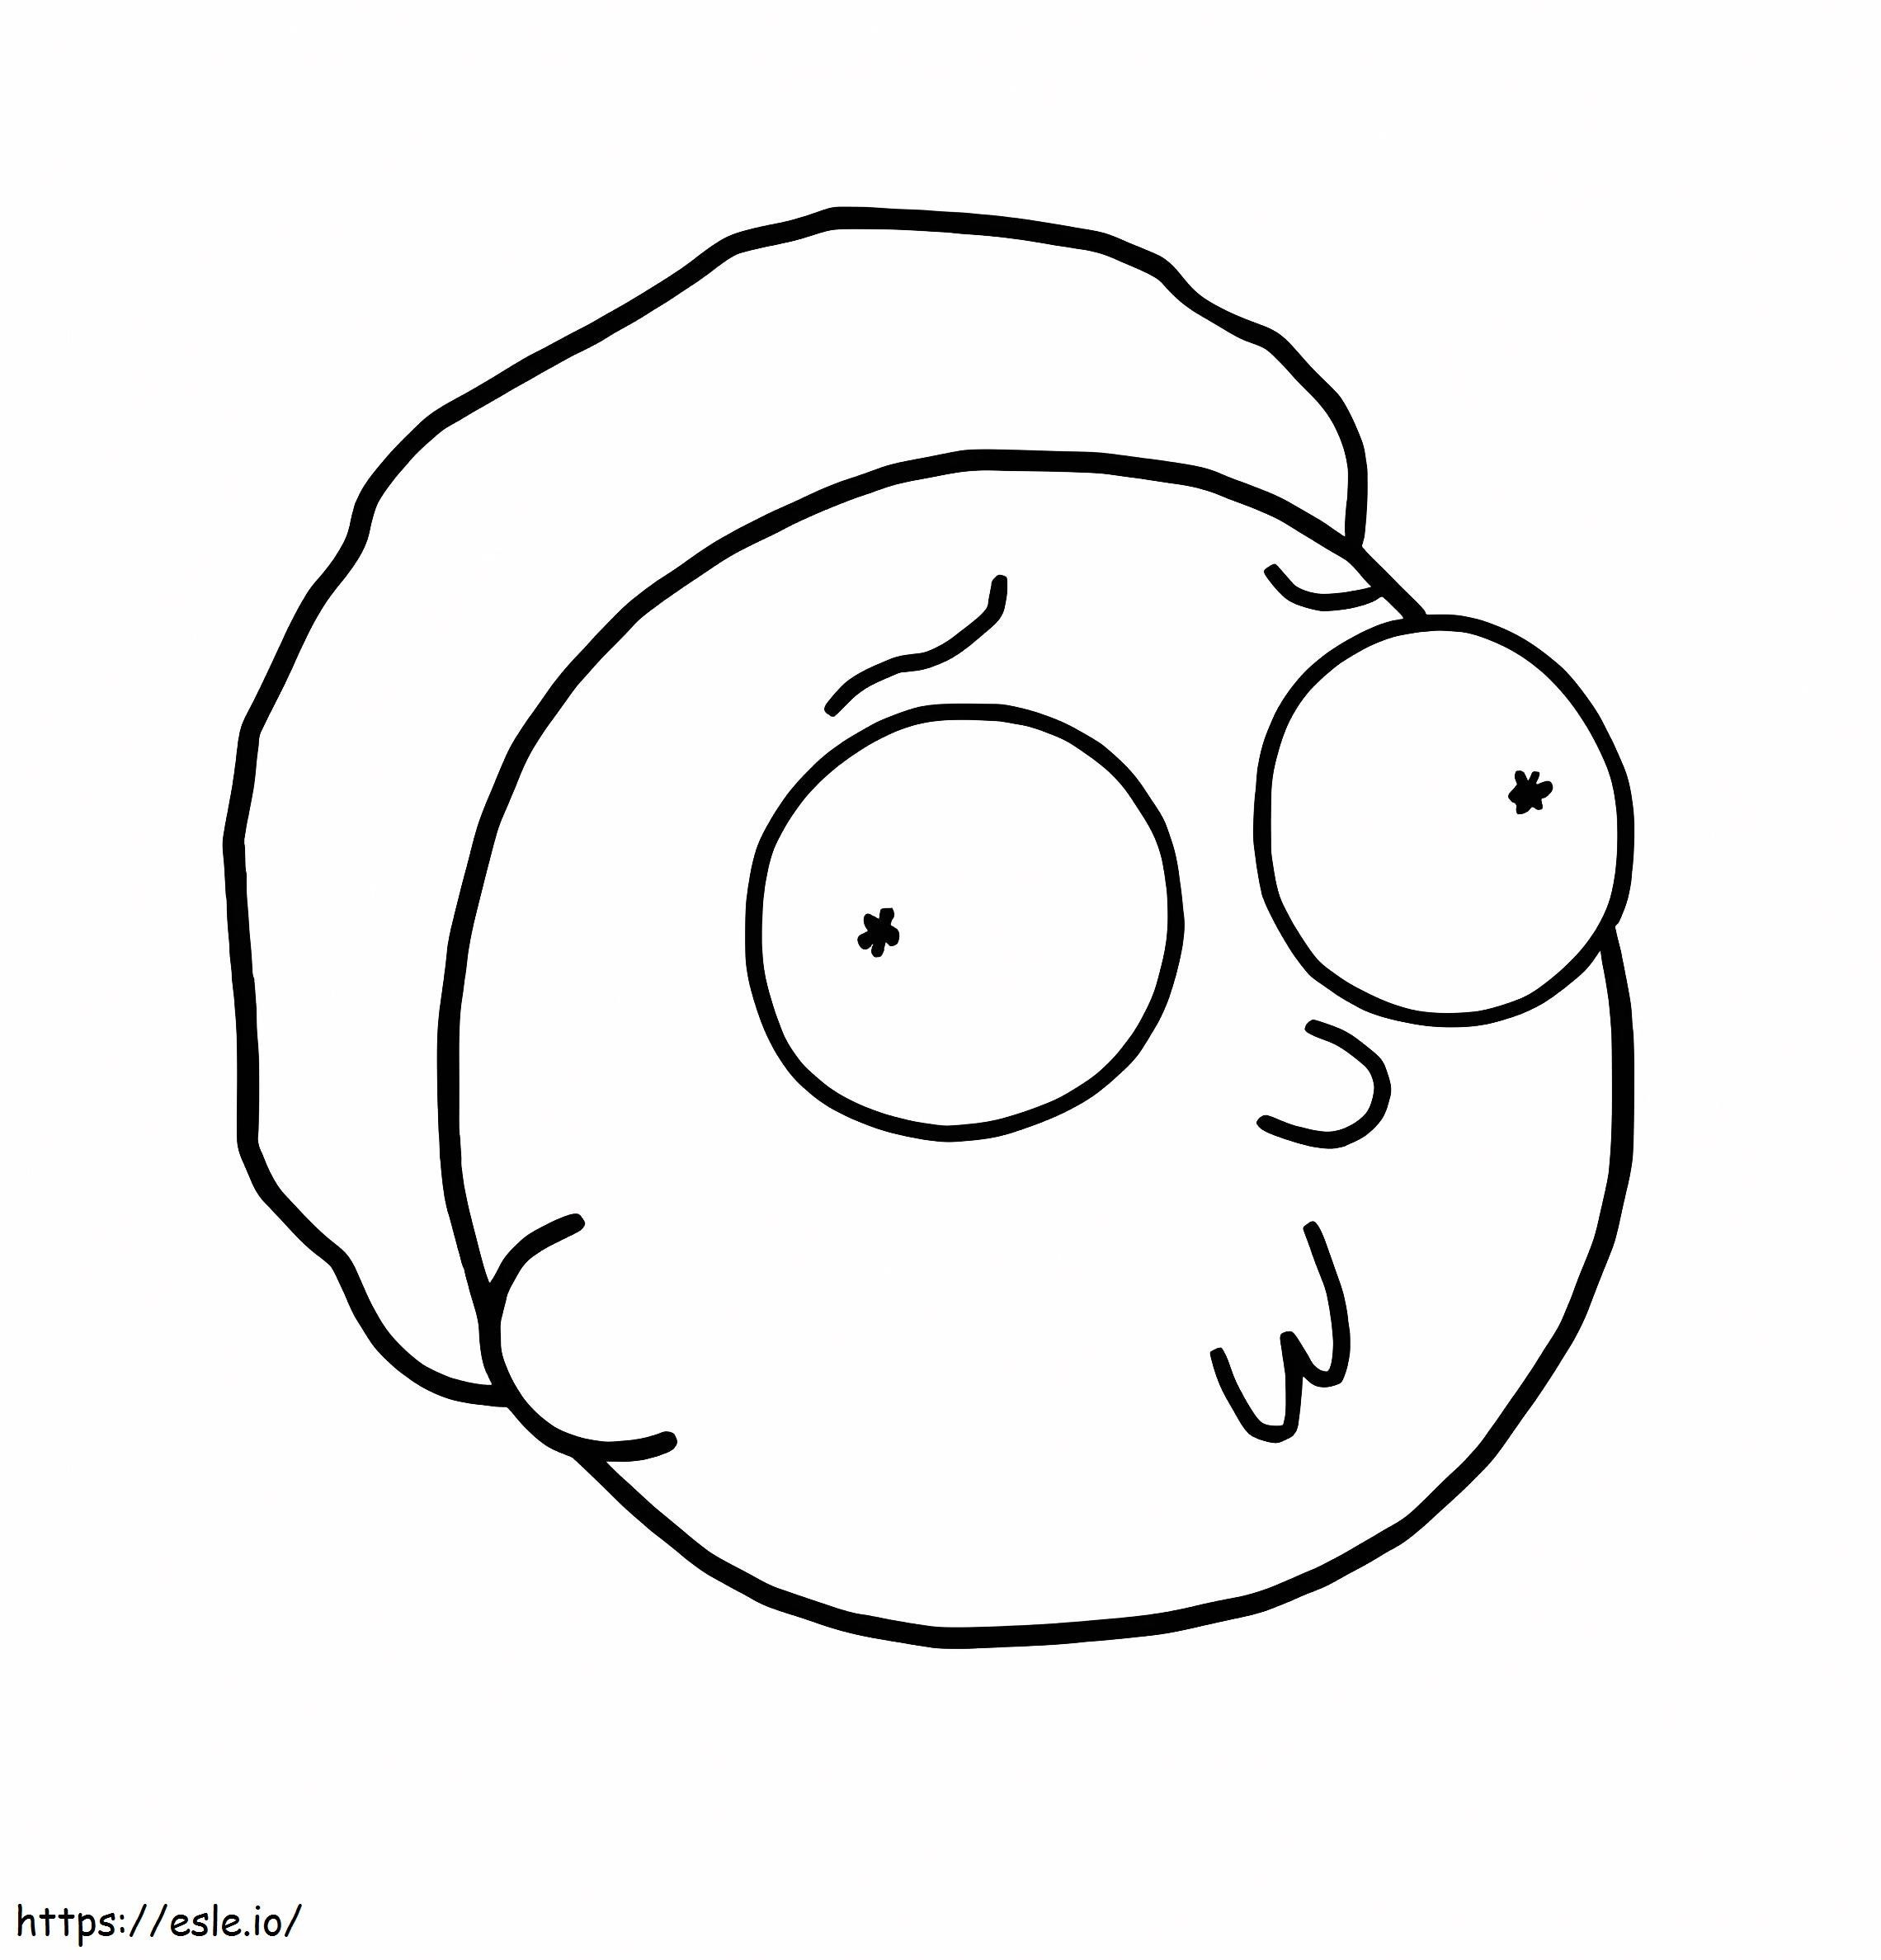 Morty-Gesicht ausmalbilder